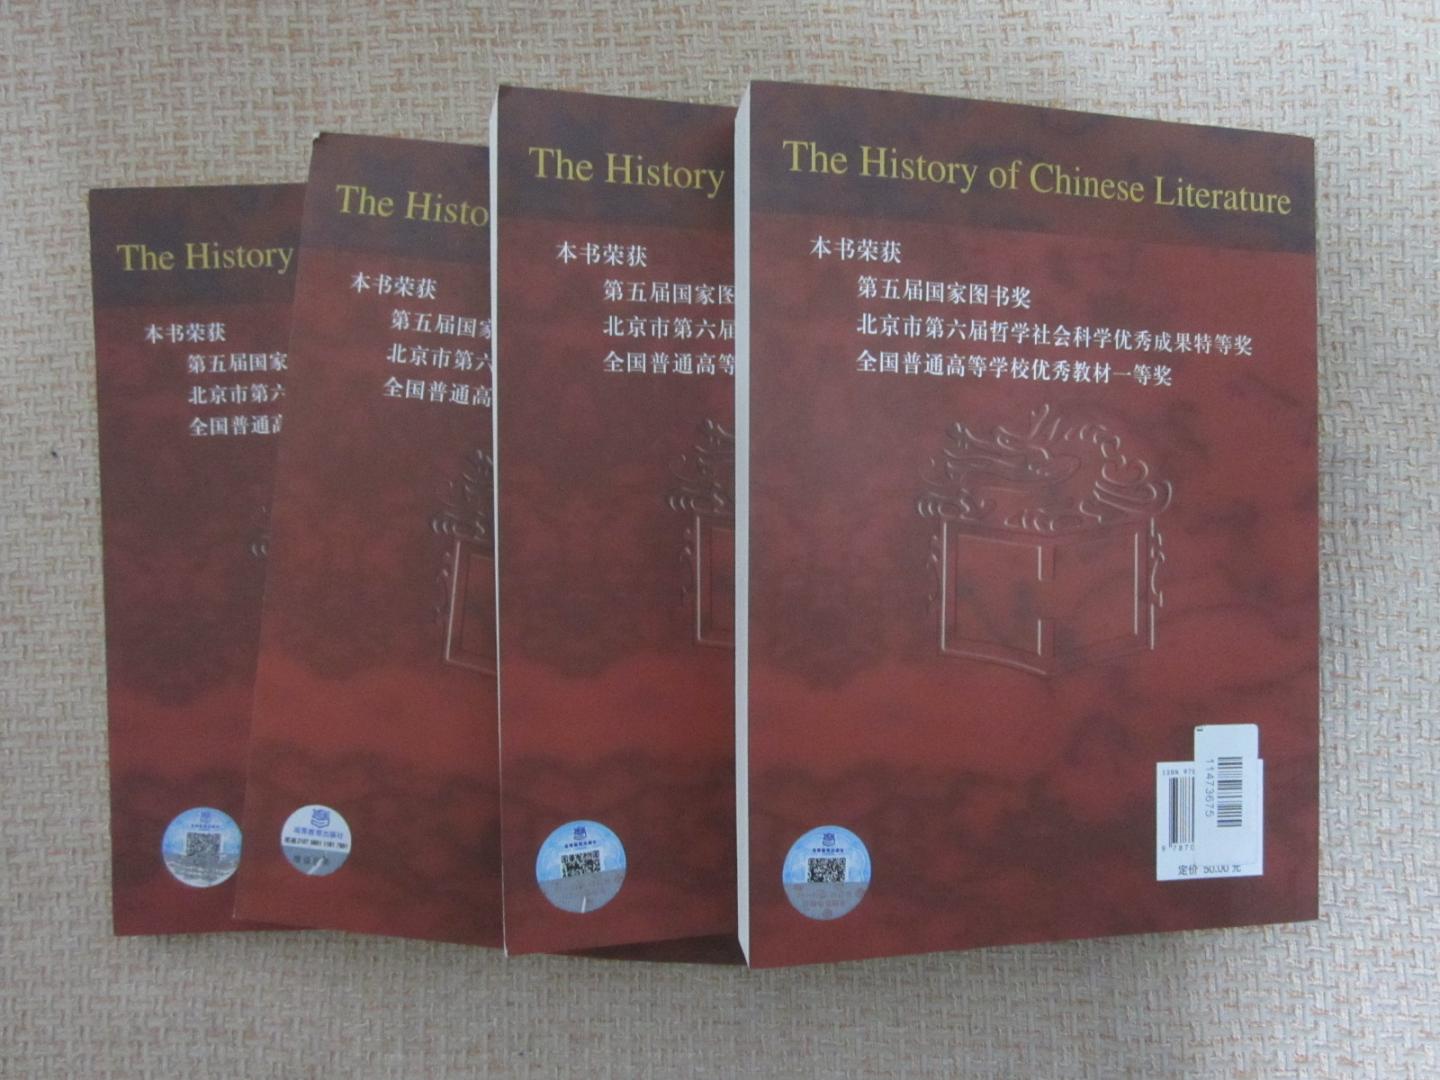 《面向21世纪课程教材·中国文学史（第三版）》是教育部“高等教育面向21世纪教学内容和课程体系改革计划”的成果，既是高校教材，又是学术研究著作。全书的编写倡导文学本位。并将文学置于广阔的文化背景之中，翔实地描述中国古代文学的发展历程，做了一些具有创新性的考证和论述。各章均有详细的附注，以介绍各家观点：各卷之后又有研修书目。为读者进一步的学习和研究提供线索。全书具有鲜明的开放性和前瞻性，以及较大的信息量。在出版后曾经获得国家图书奖、北京市哲学社会科学优秀成果特等奖、全国普通高等学校优秀教材一等奖。